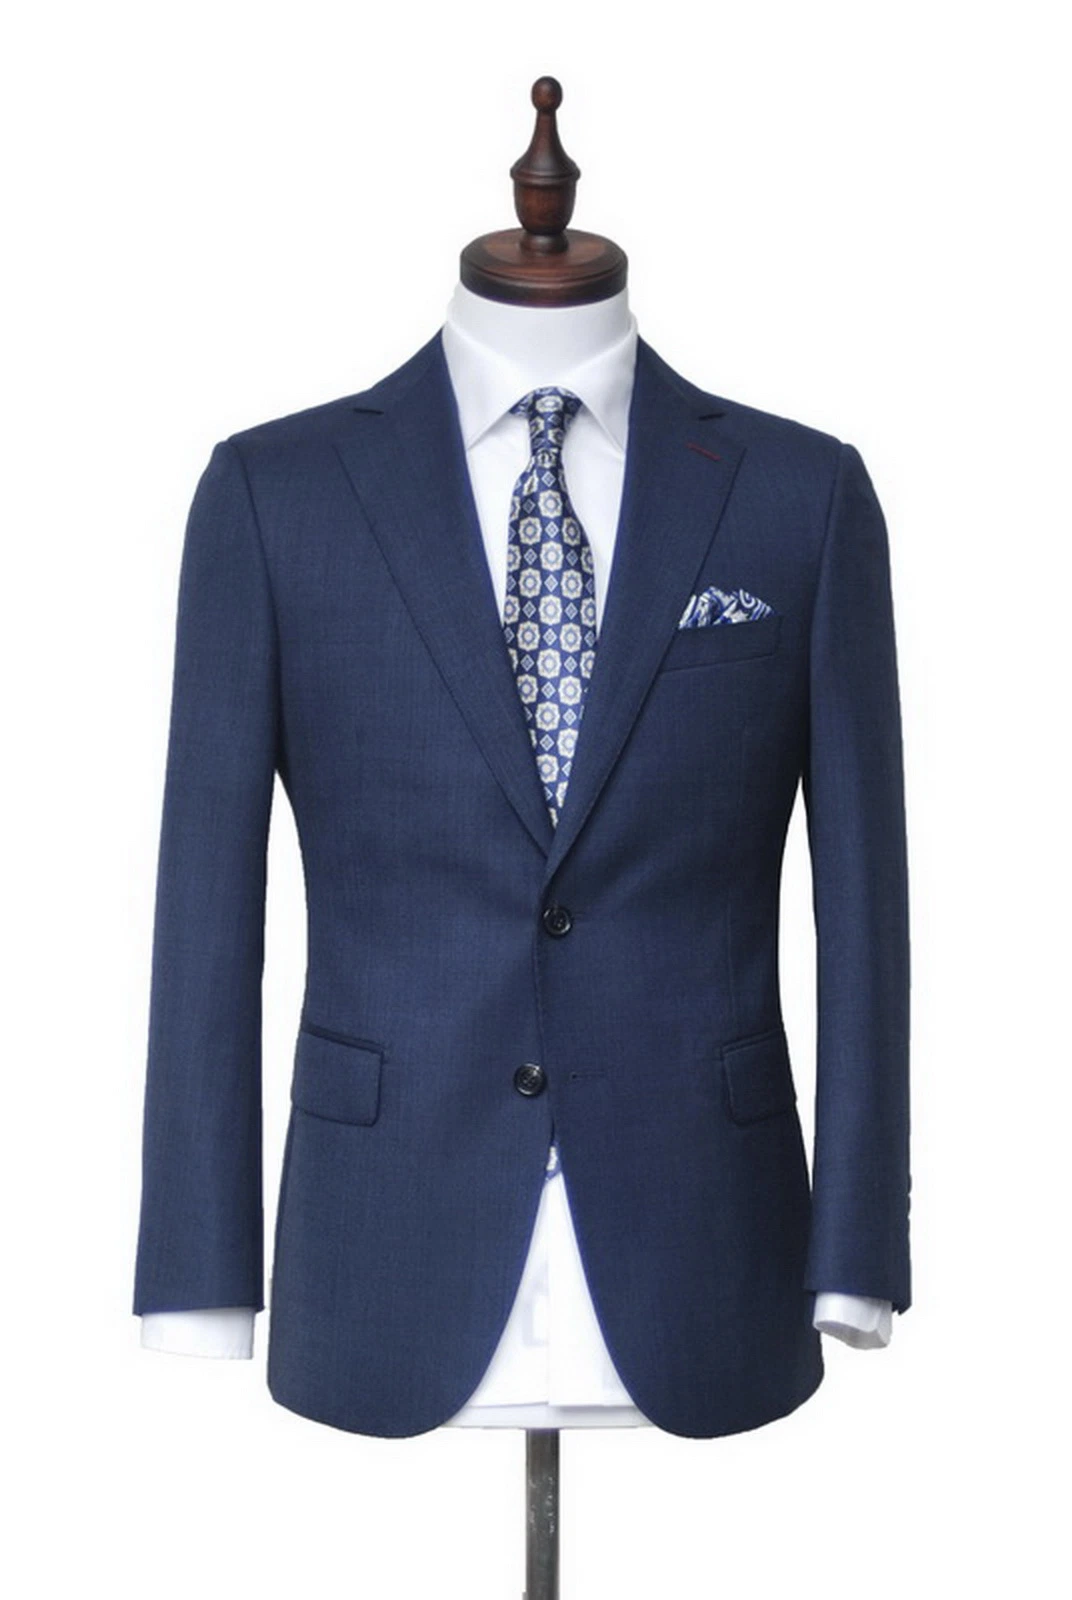 Custom Business Suits Wool Blazer Leisure Men's Suits Bespoke Men Suits Pants Wedding Party Men Suits